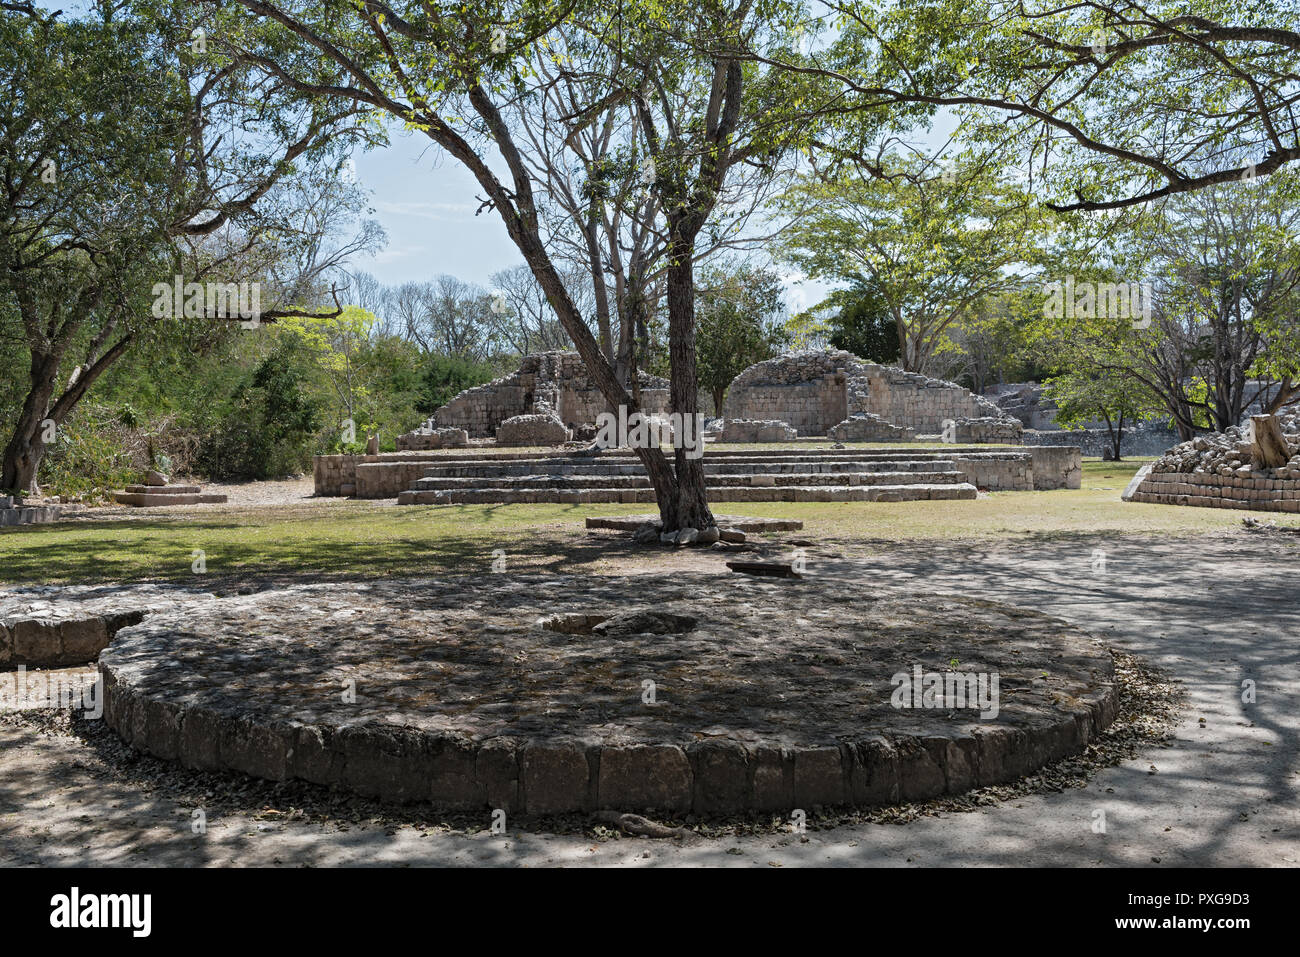 Die Ruinen der antiken Stadt Edzna in der Nähe von Campeche, Mexiko Stockfoto